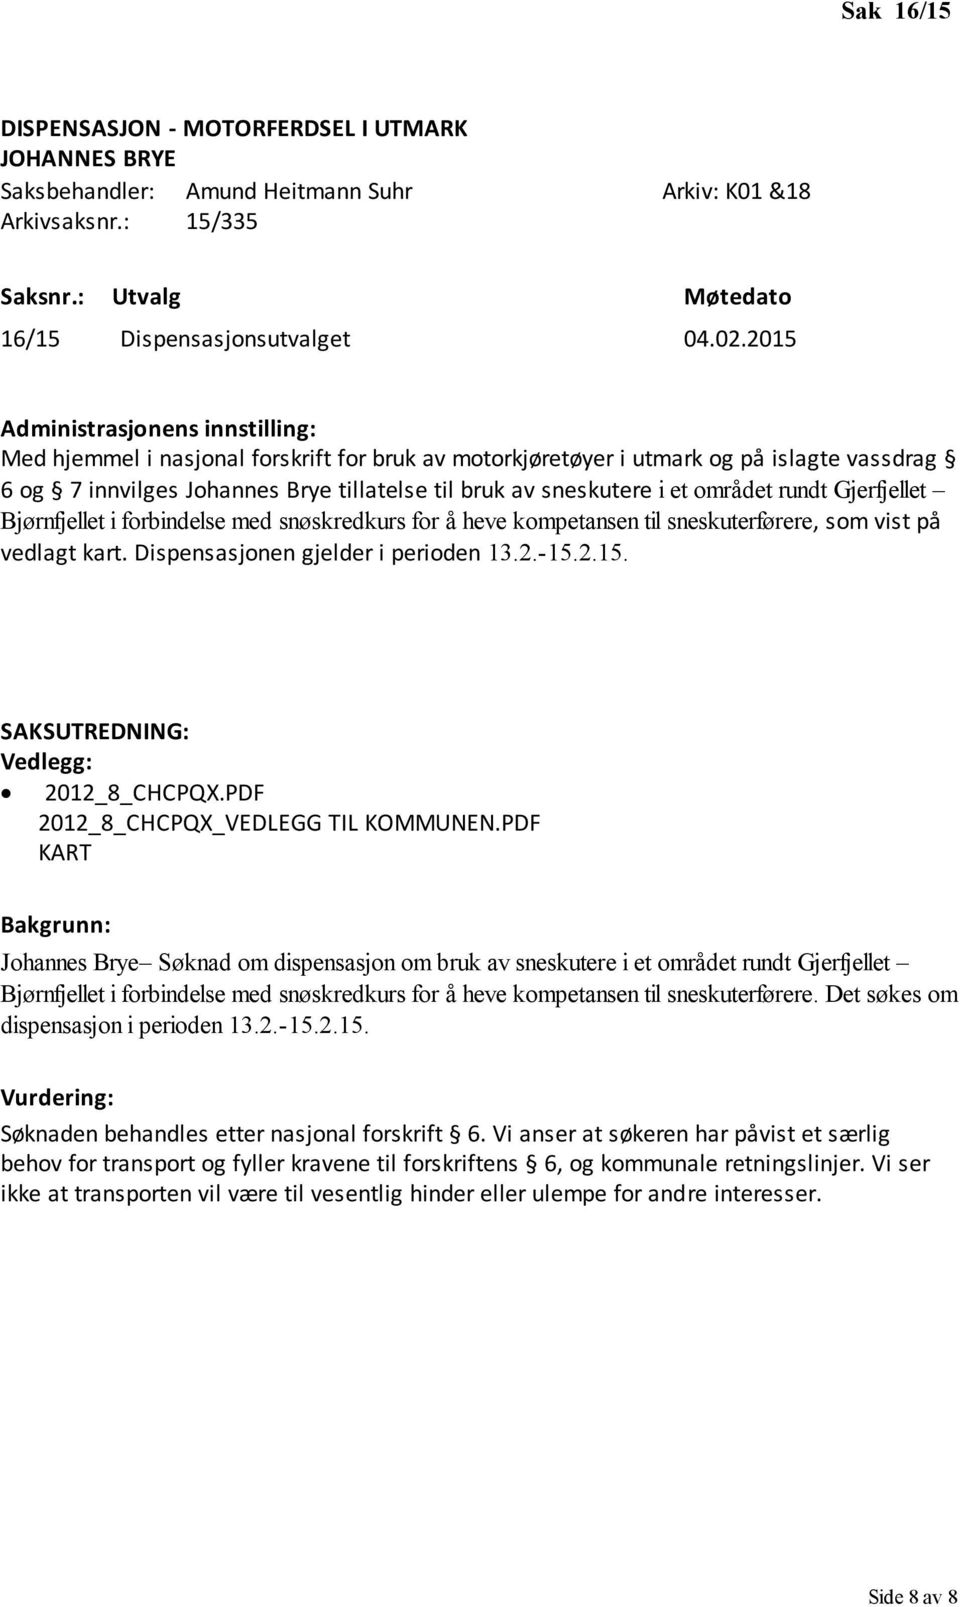 Bjørnfjellet i forbindelse med snøskredkurs for å heve kompetansen til sneskuterførere, som vist på vedlagt kart. Dispensasjonen gjelder i perioden 13.2.-15.2.15. 2012_8_CHCPQX.